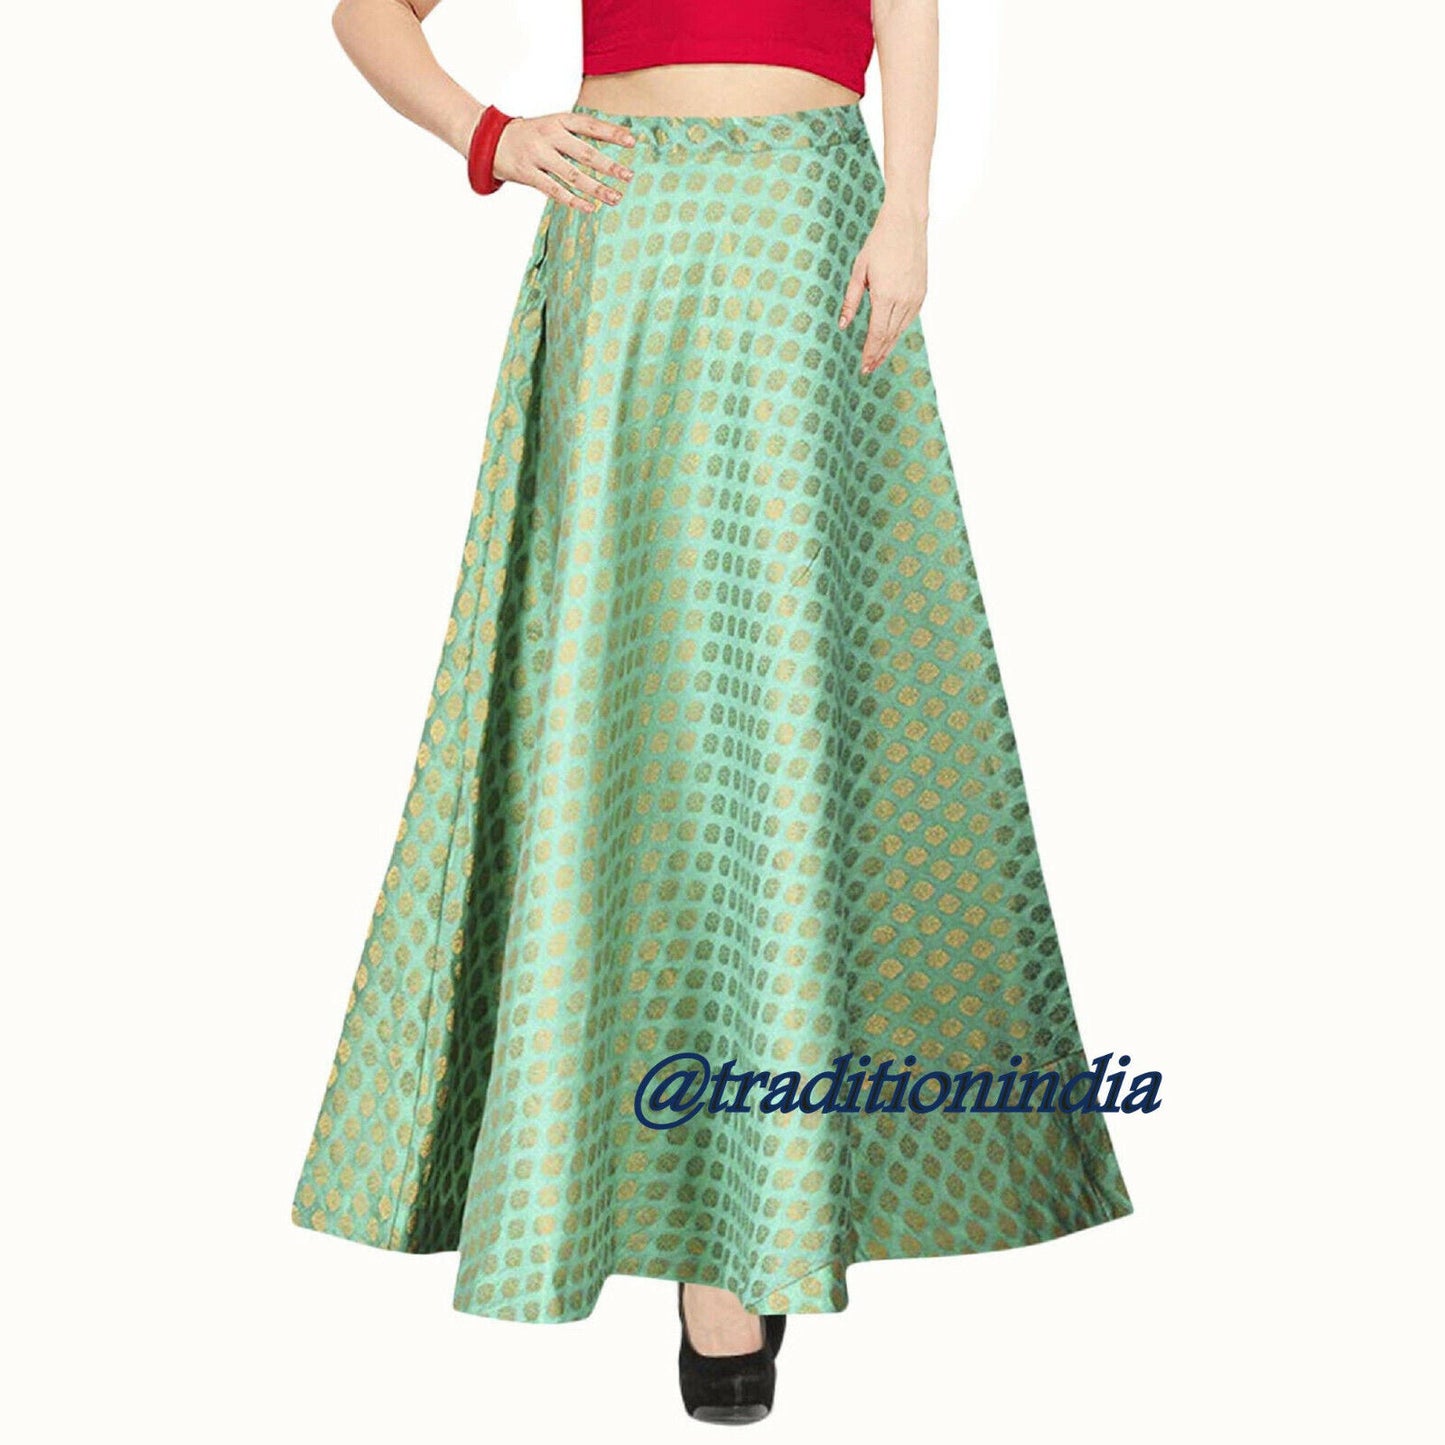 Turquoise Chanderi Silk Skirt, Ethnic Lehenga, Indian Long Skirt, Bollywood Skirt, Dance Skirt, Designer Skirts ,Wedding Dresses,